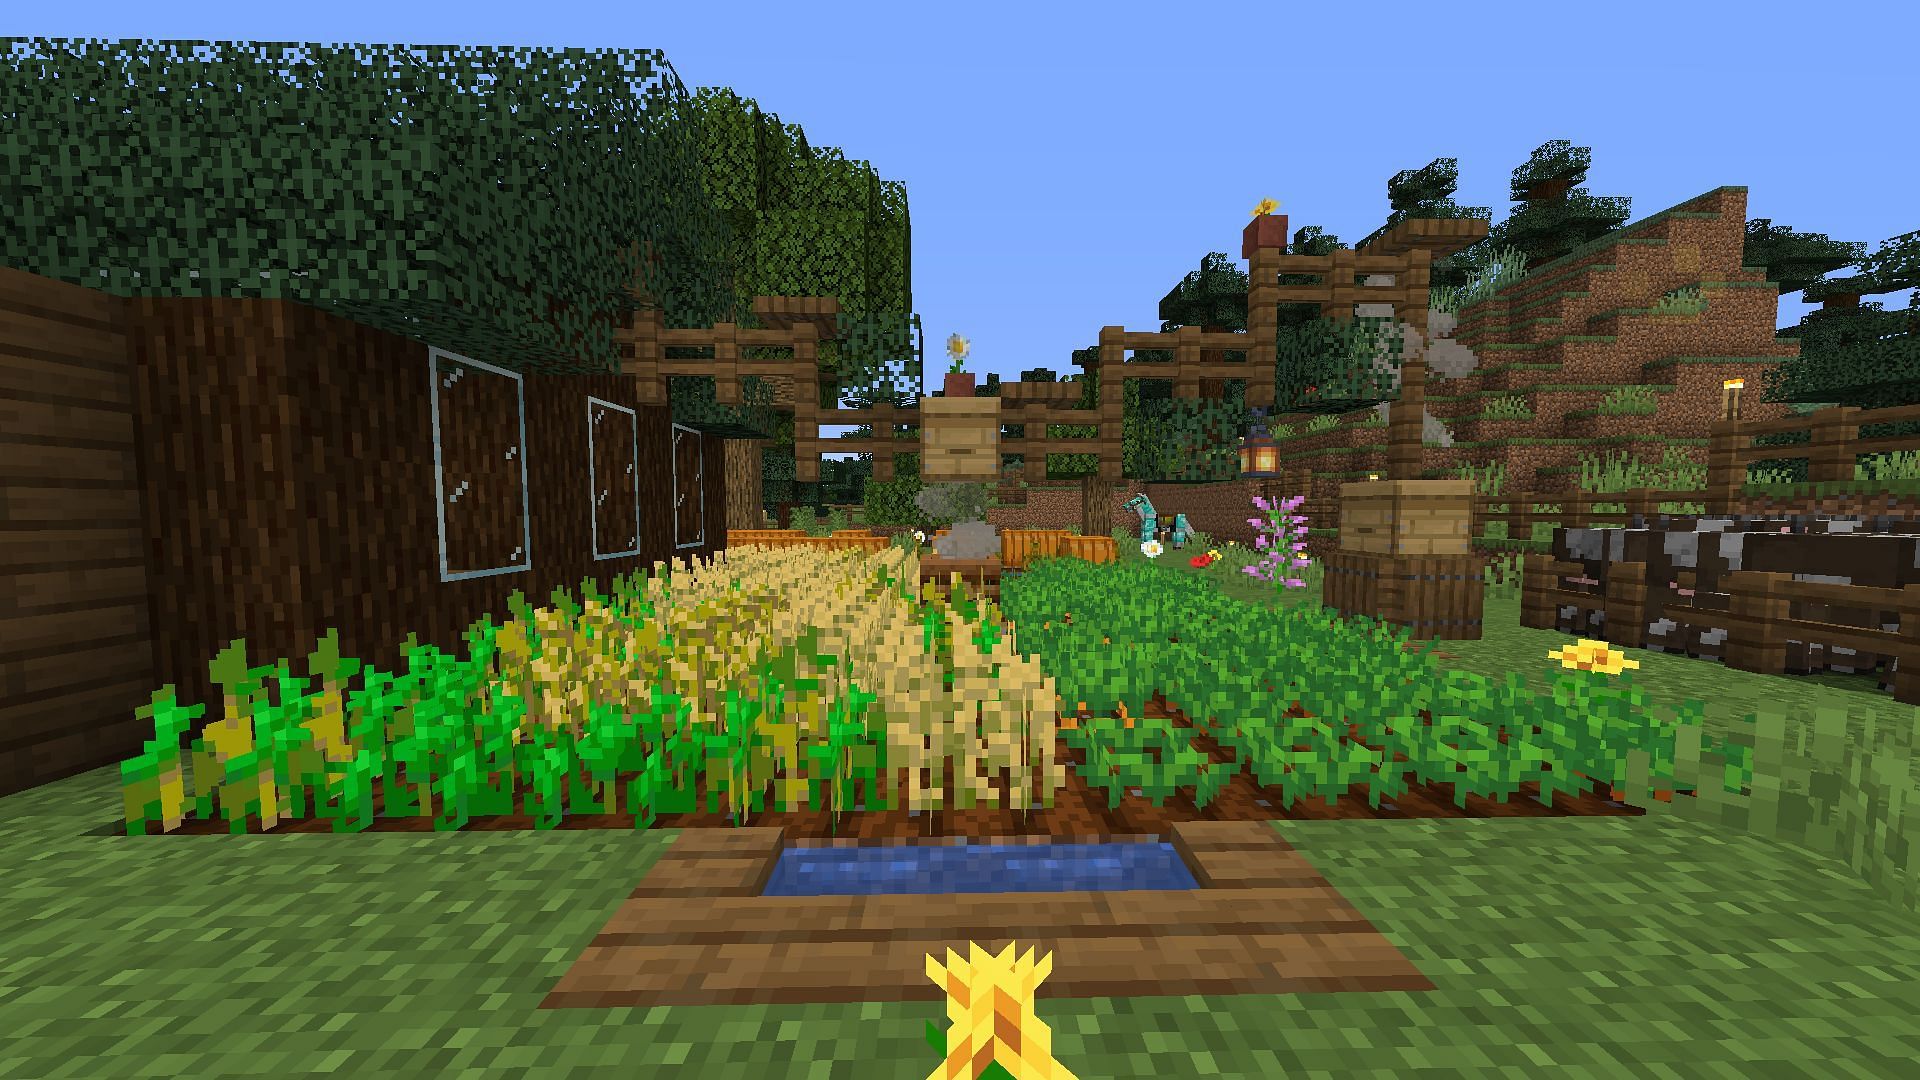 Simple crop farm (Image via u/aregei on Reddit)